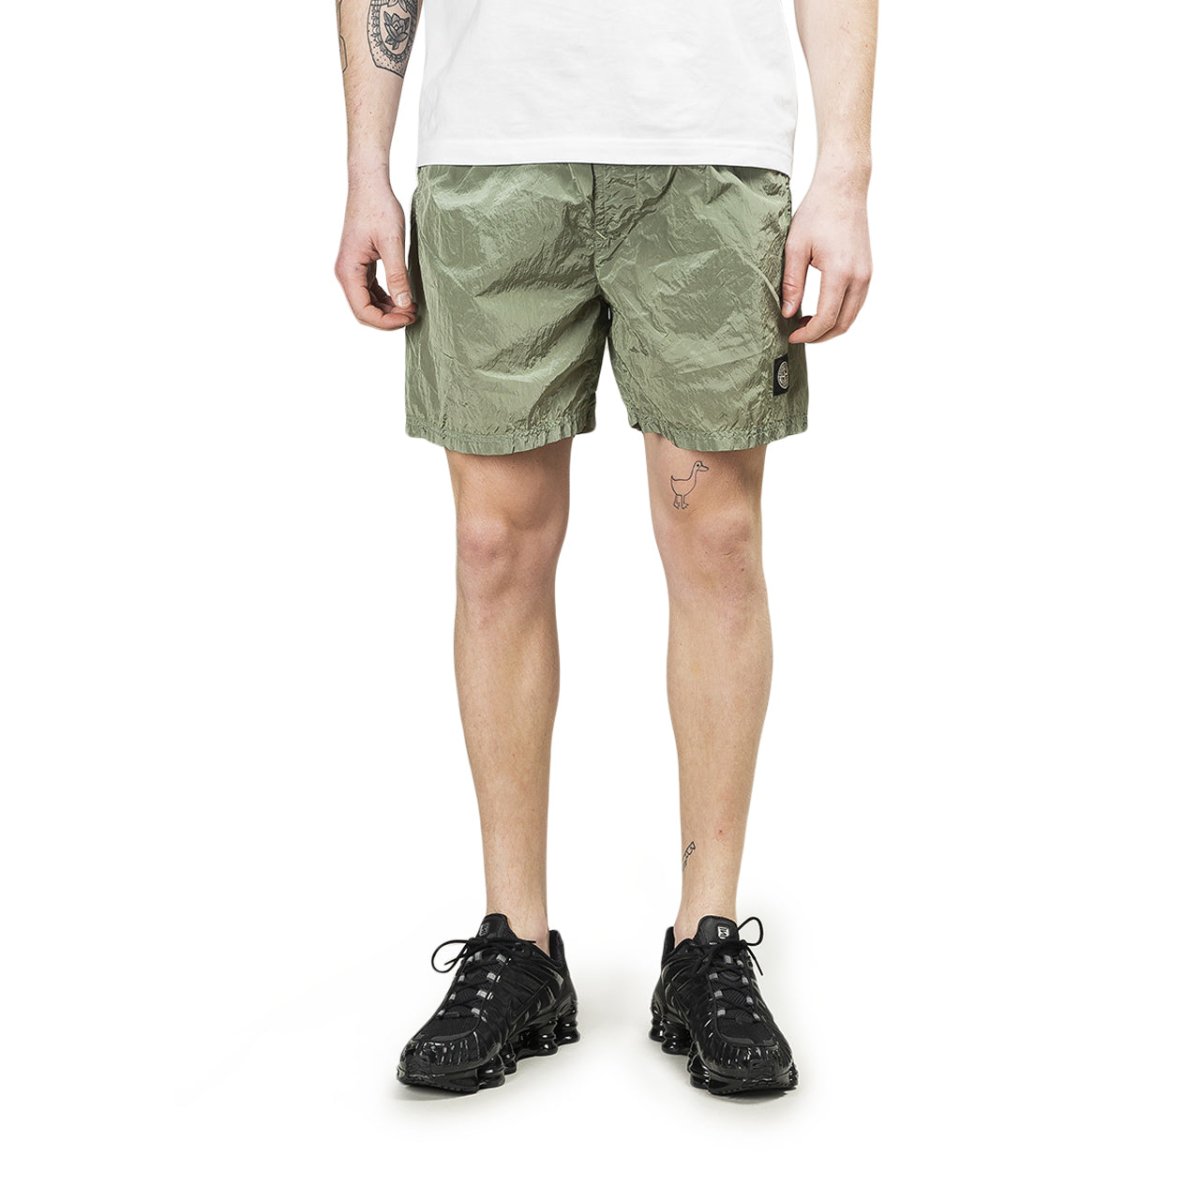 Stone Island Shorts (Olive)  - Allike Store